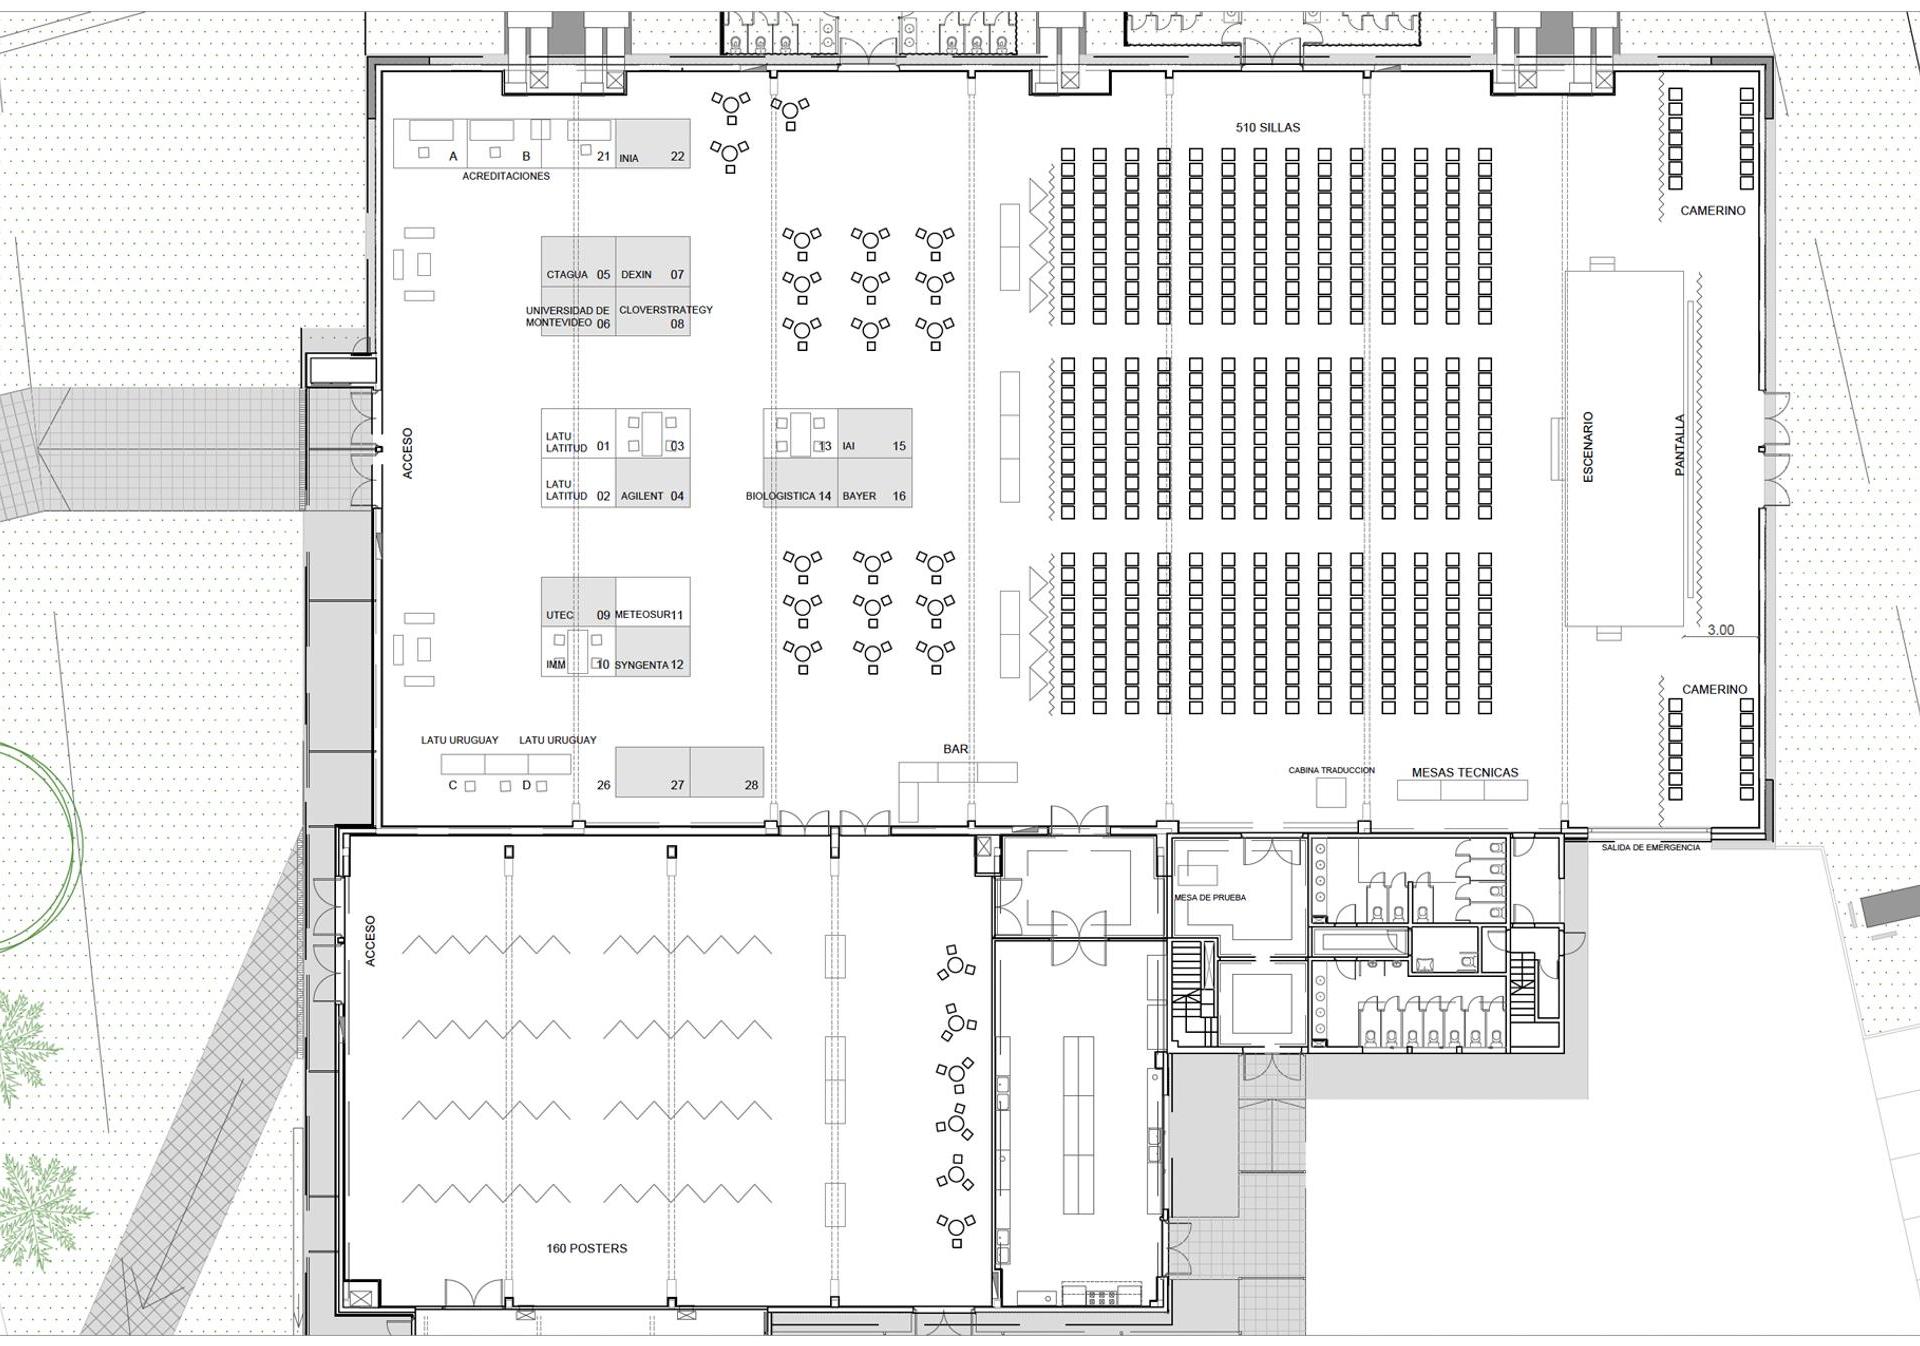 SETAC Montevideo exhibit hall floor plan